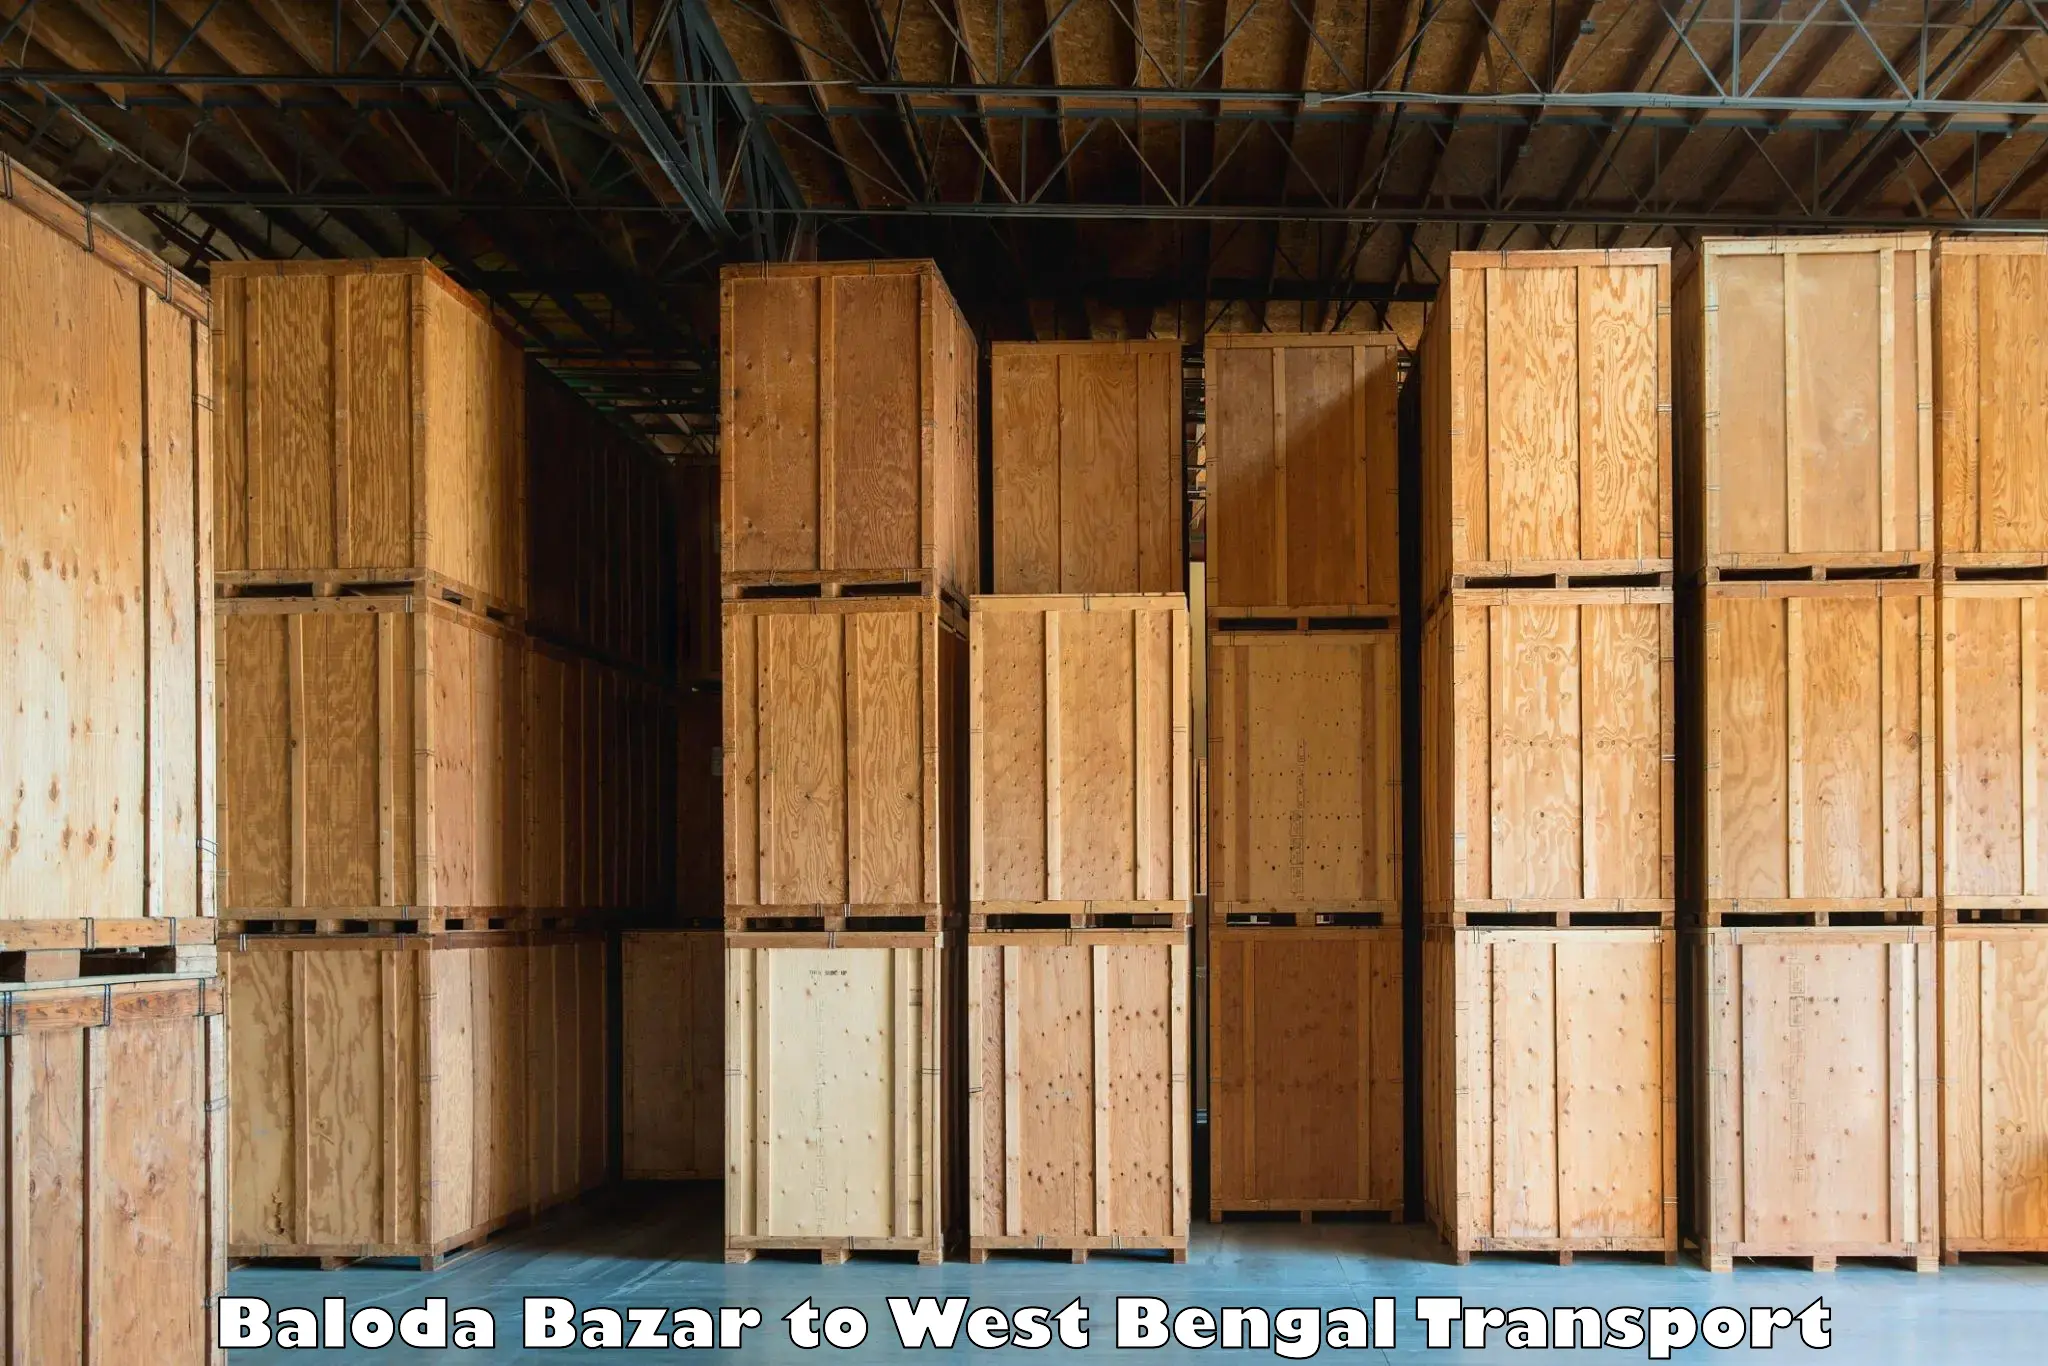 Cargo train transport services Baloda Bazar to Ennore